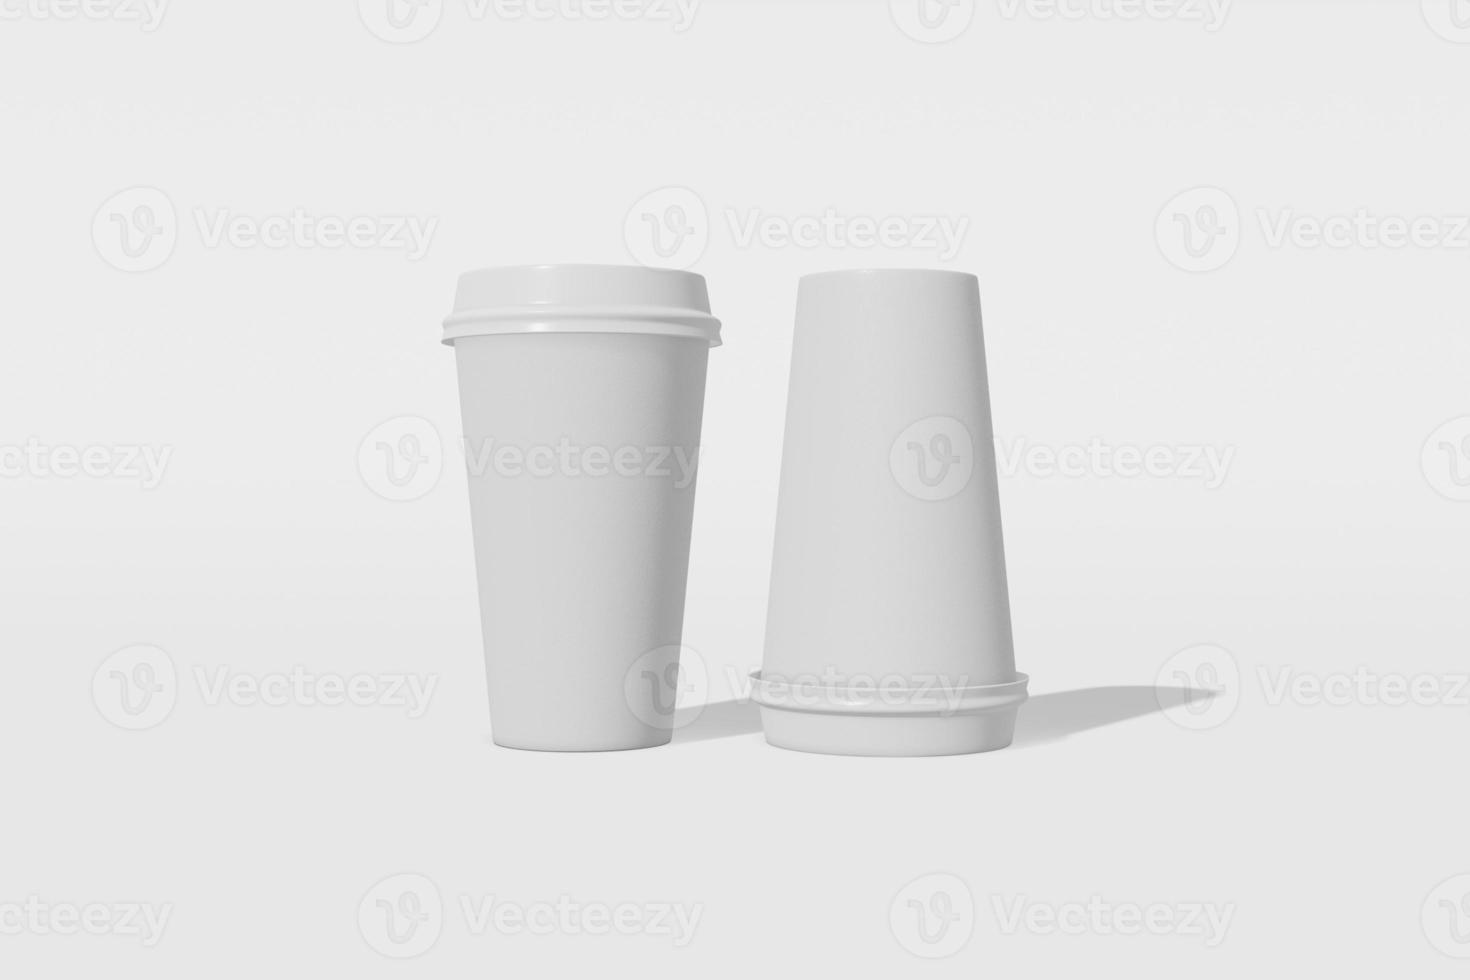 maqueta de dos vasos de papel con una tapa sobre un fondo blanco. uno de los vasos está al revés. representación 3d foto